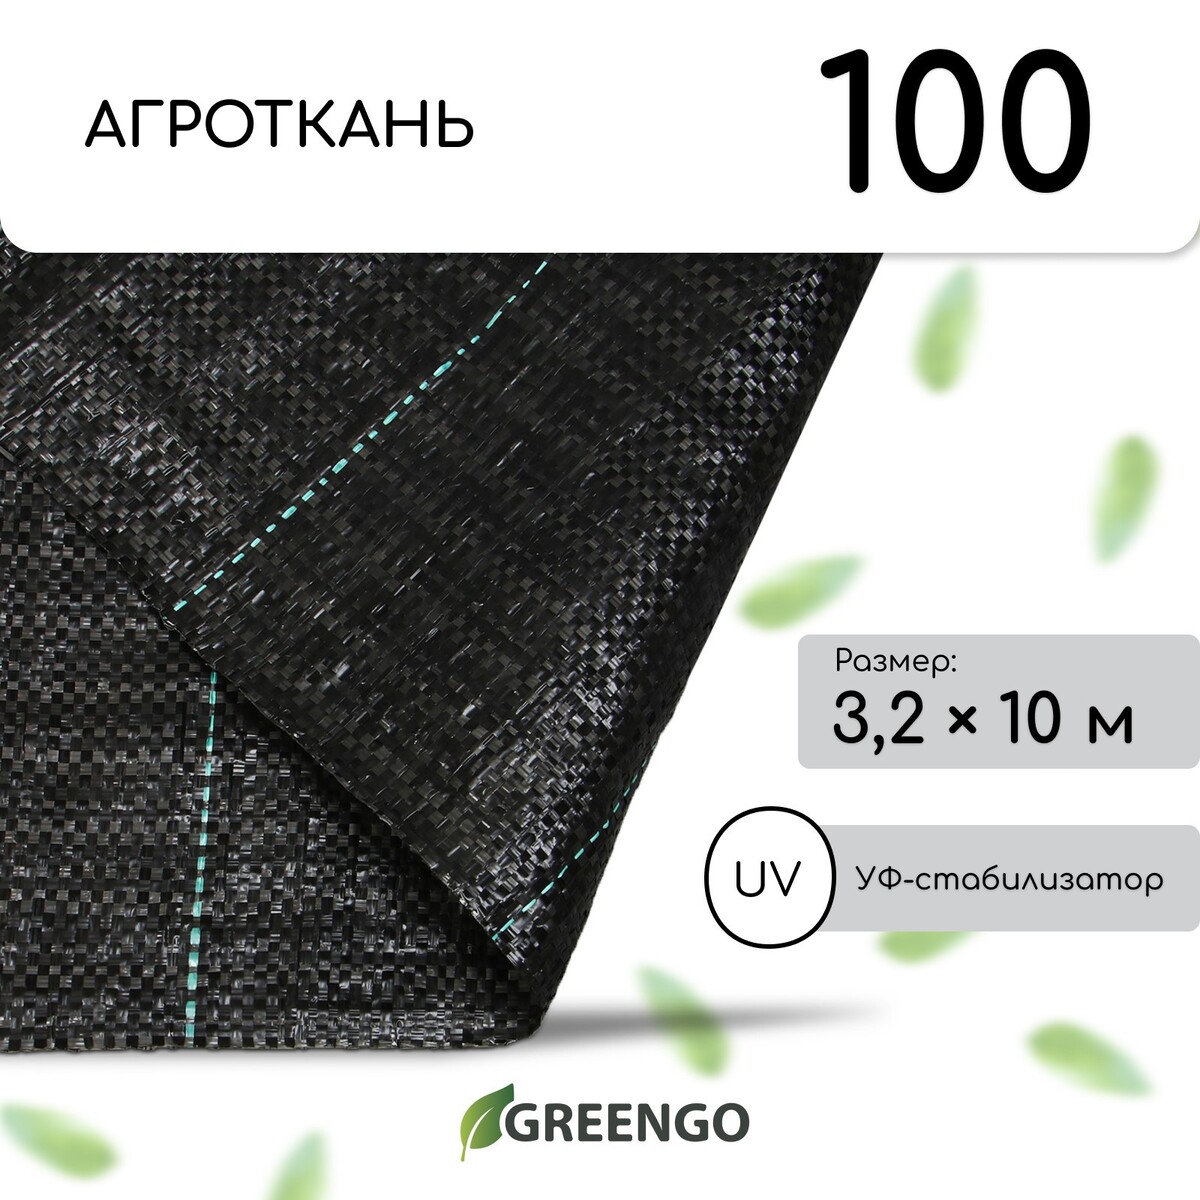 Агроткань застилочная, с разметкой, 10 × 3,2 м, плотность 100 г/м², полипропилен, greengo, эконом 50% Greengo